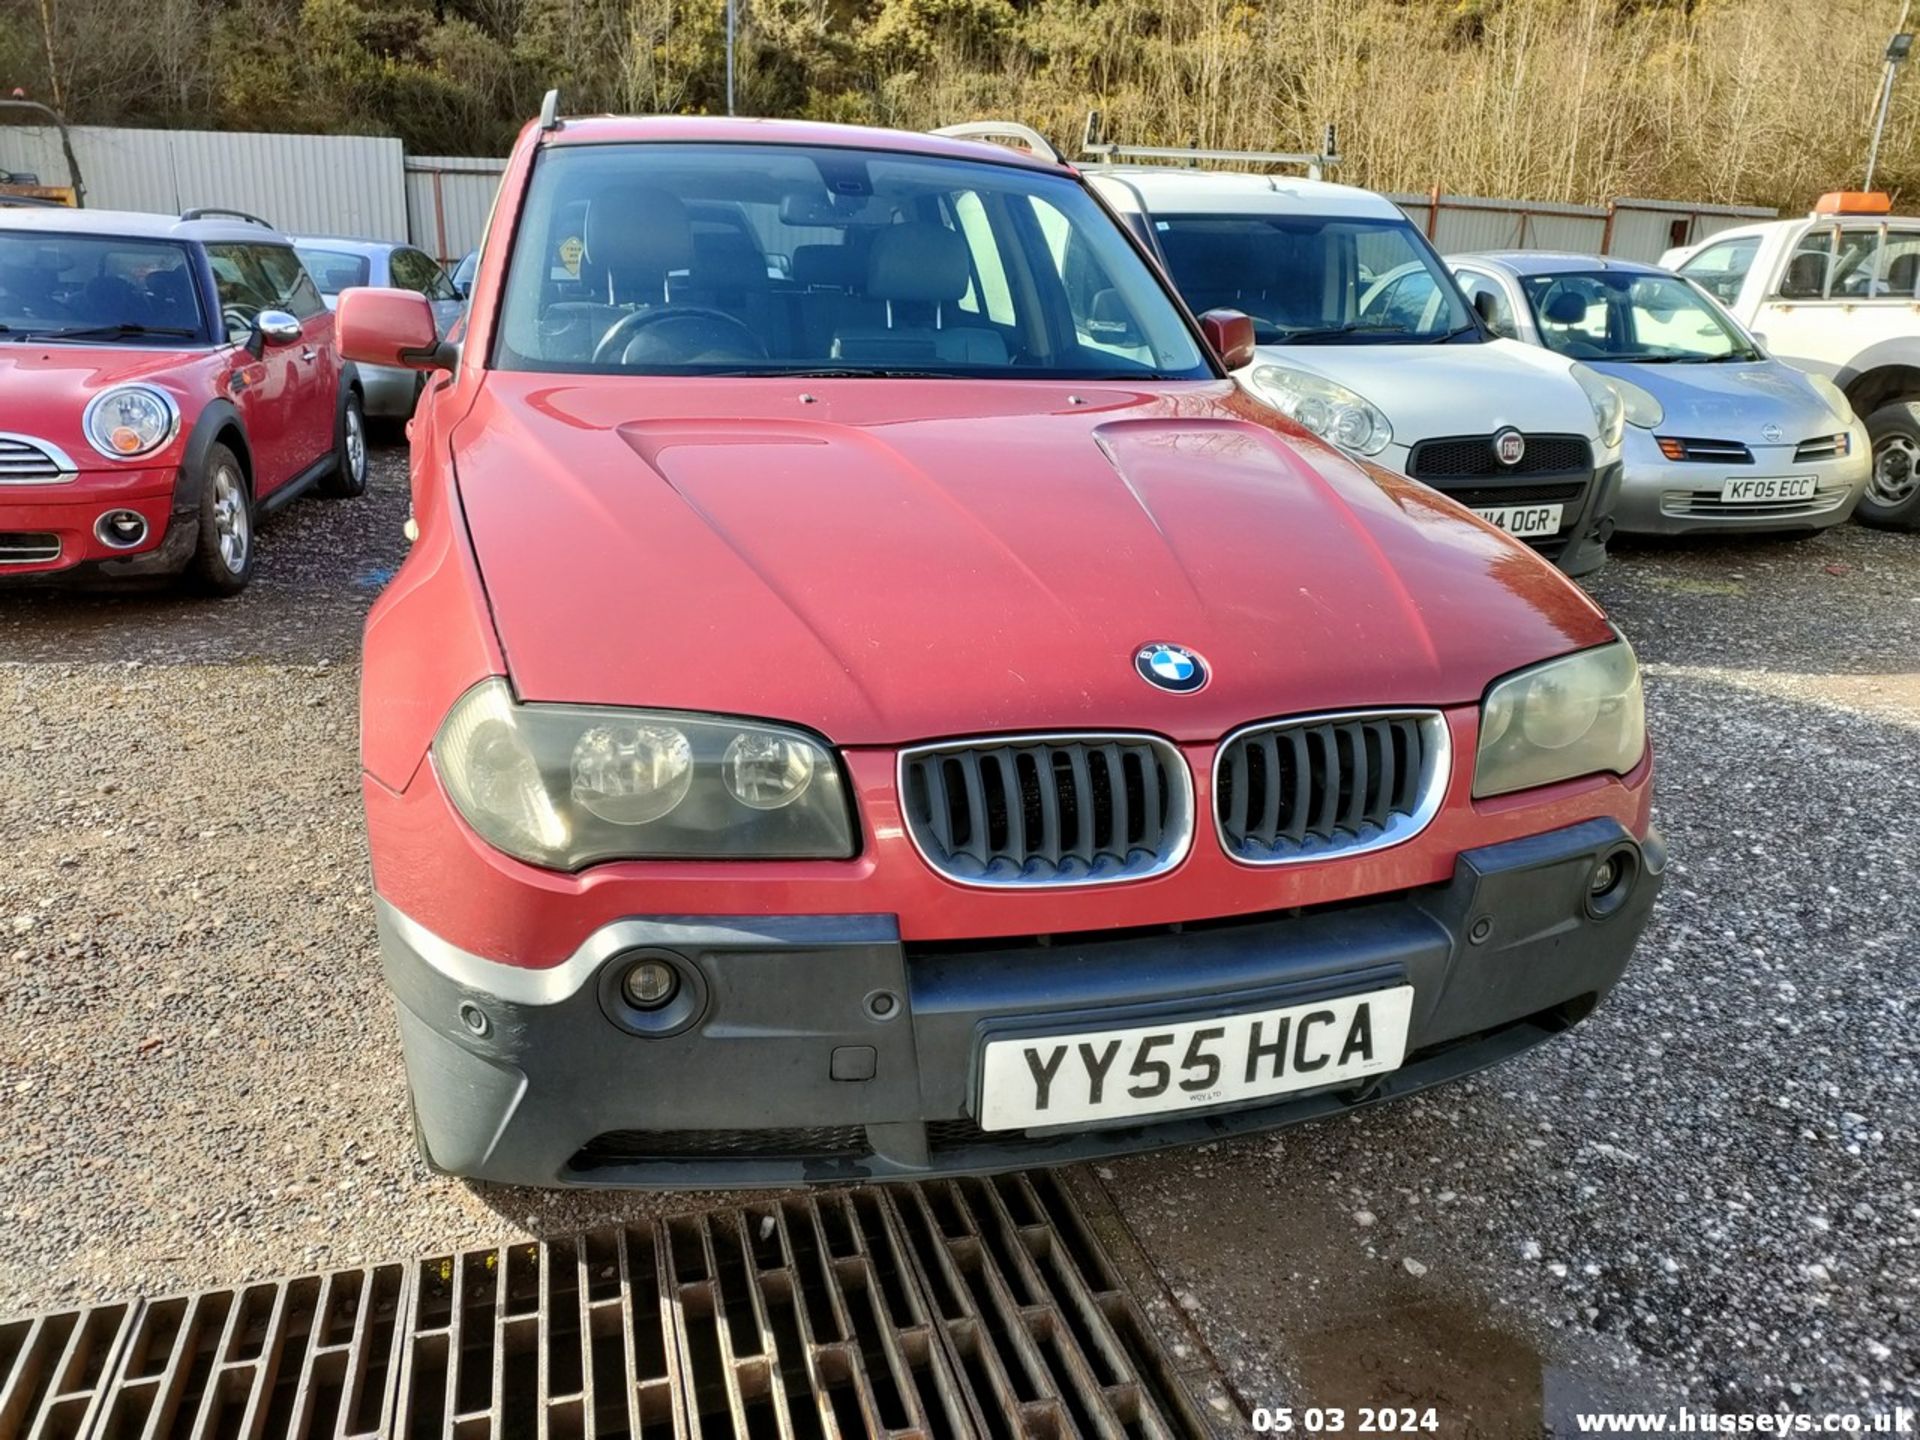 05/55 BMW X3 D SE - 1995cc 5dr Estate (Red, 188k) - Image 8 of 51